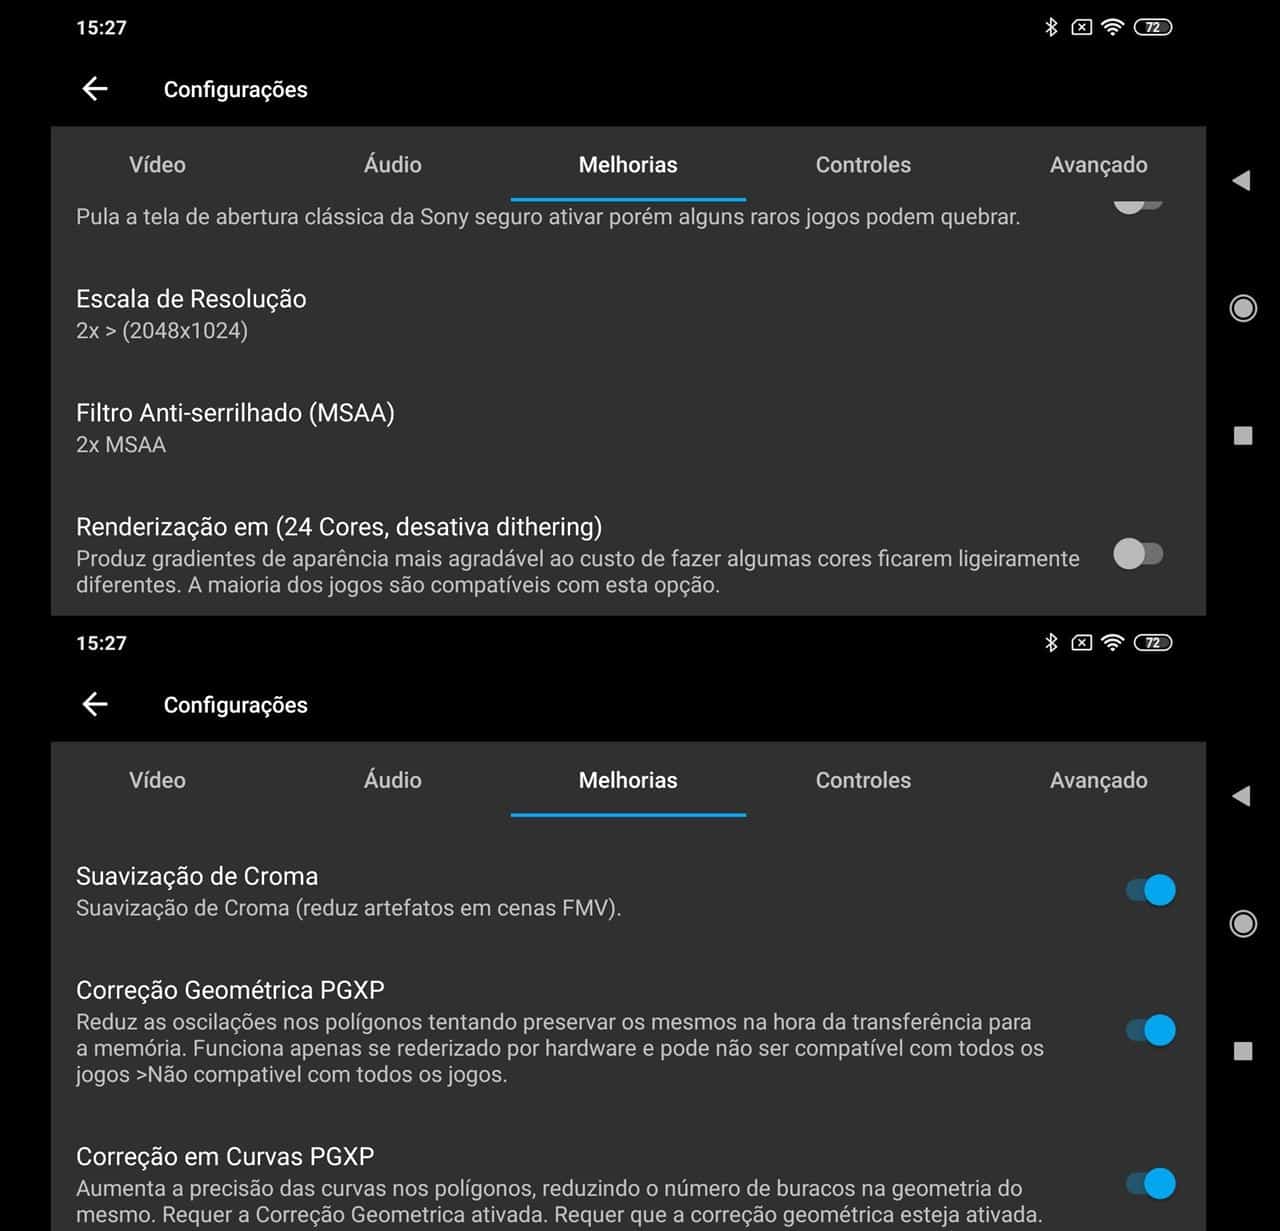 duckstation-android-emulador-ps1-configuracoes DuckStation: emulador do PS1 para Android gratuito e sem anúncios